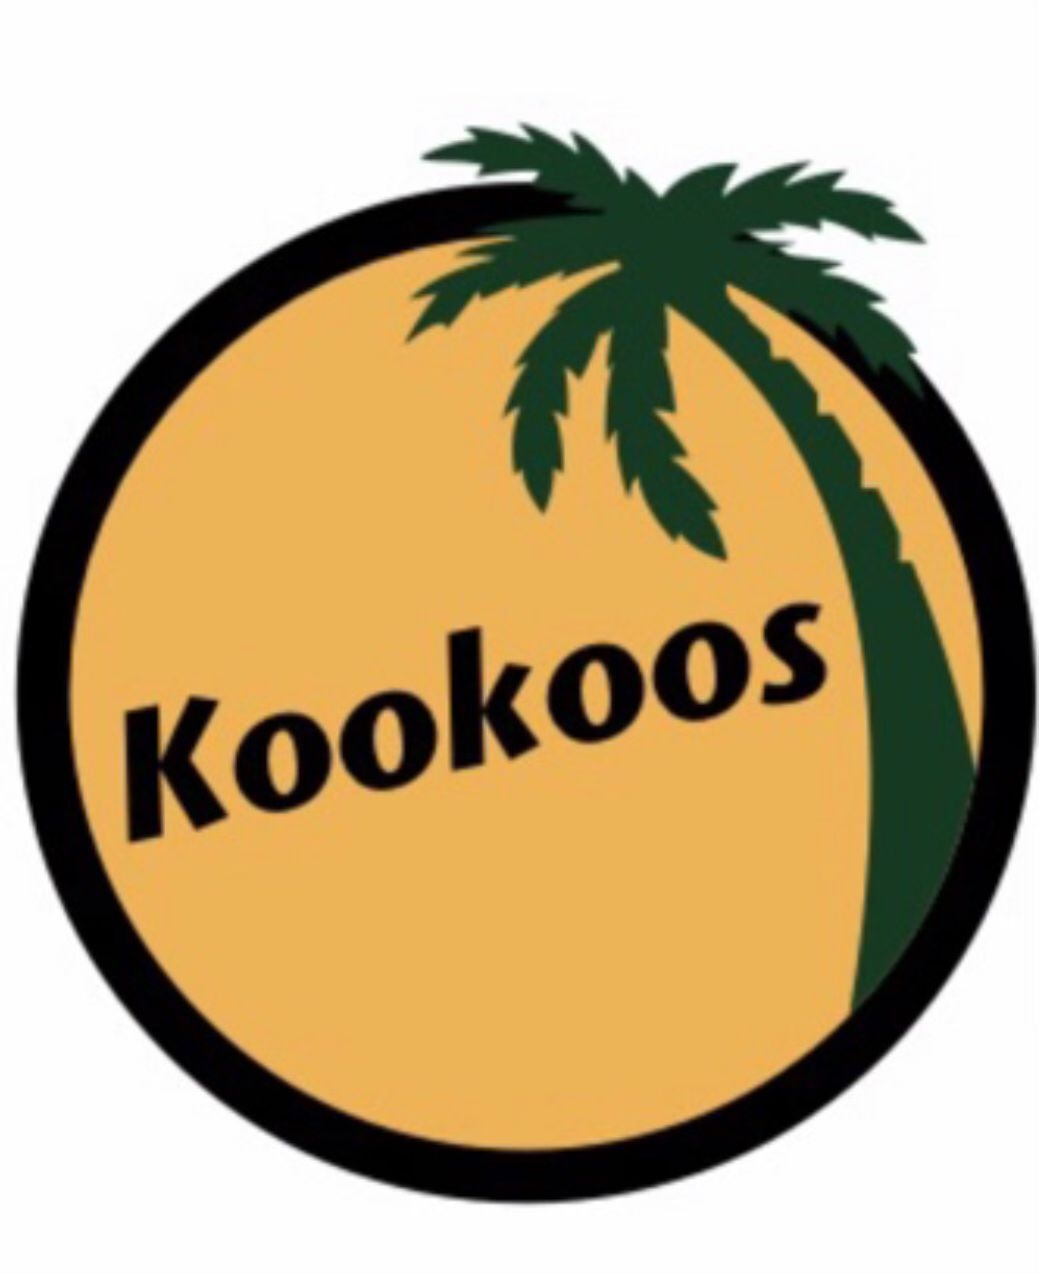 Kookoos